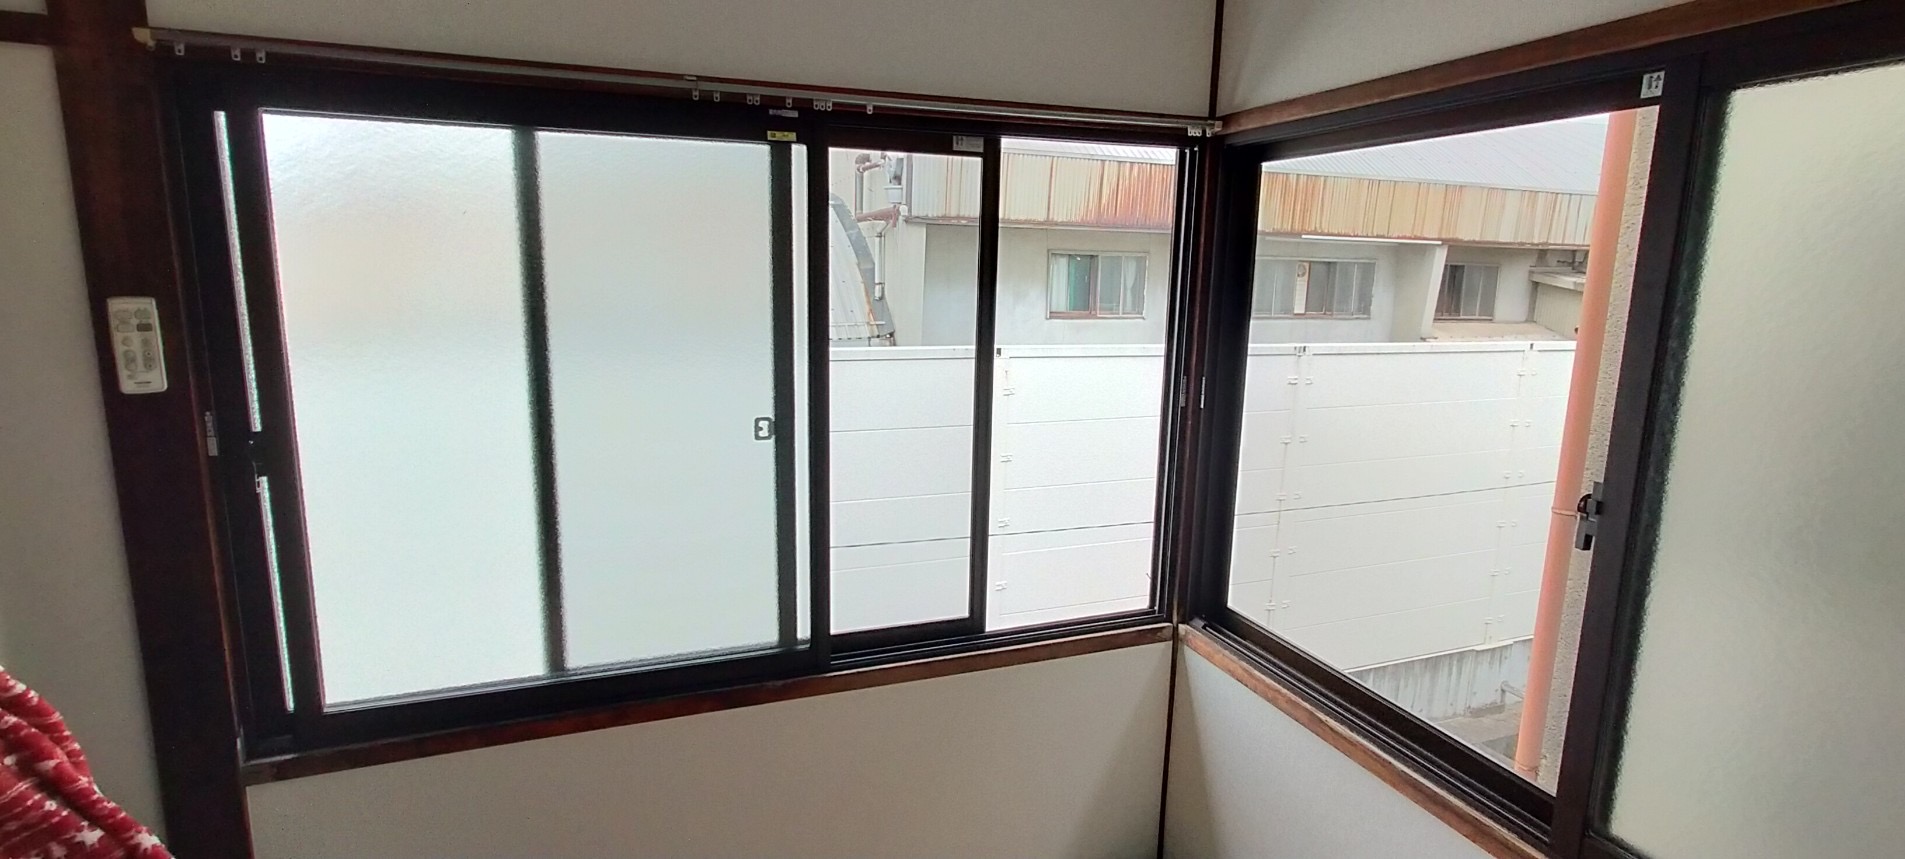 レールを設置してからの網戸! 窓ドア京橋駅前店のブログ メイン写真